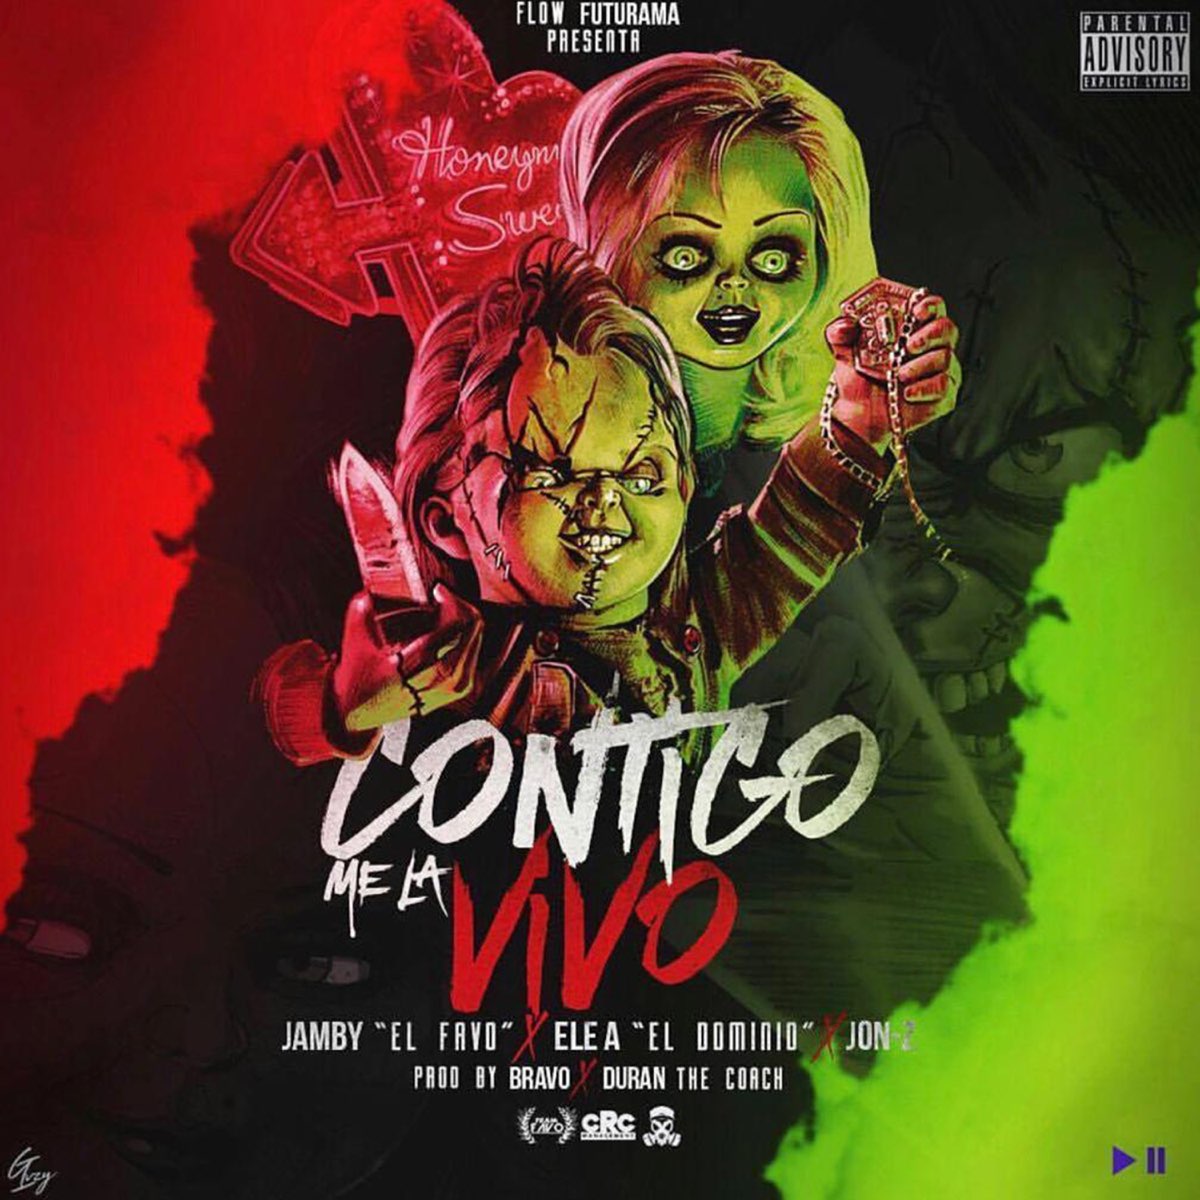 Contigo Me la Vivo - Single by Jamby el Favo, Ele a el Dominio & Jon Z on  Apple Music